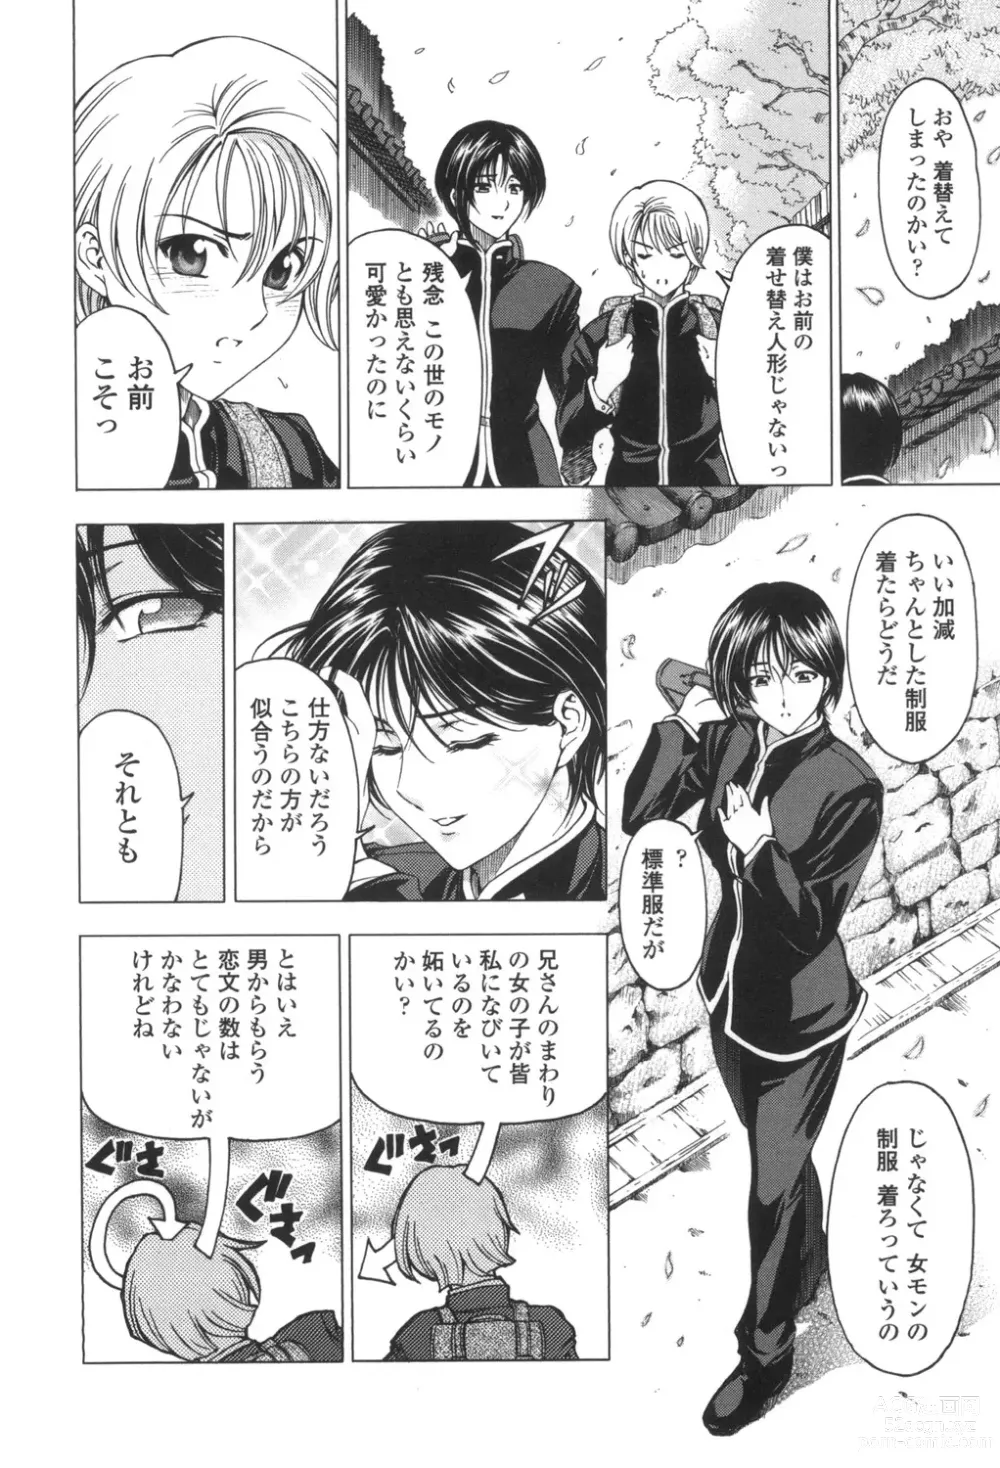 Page 9 of manga Maruimo!?